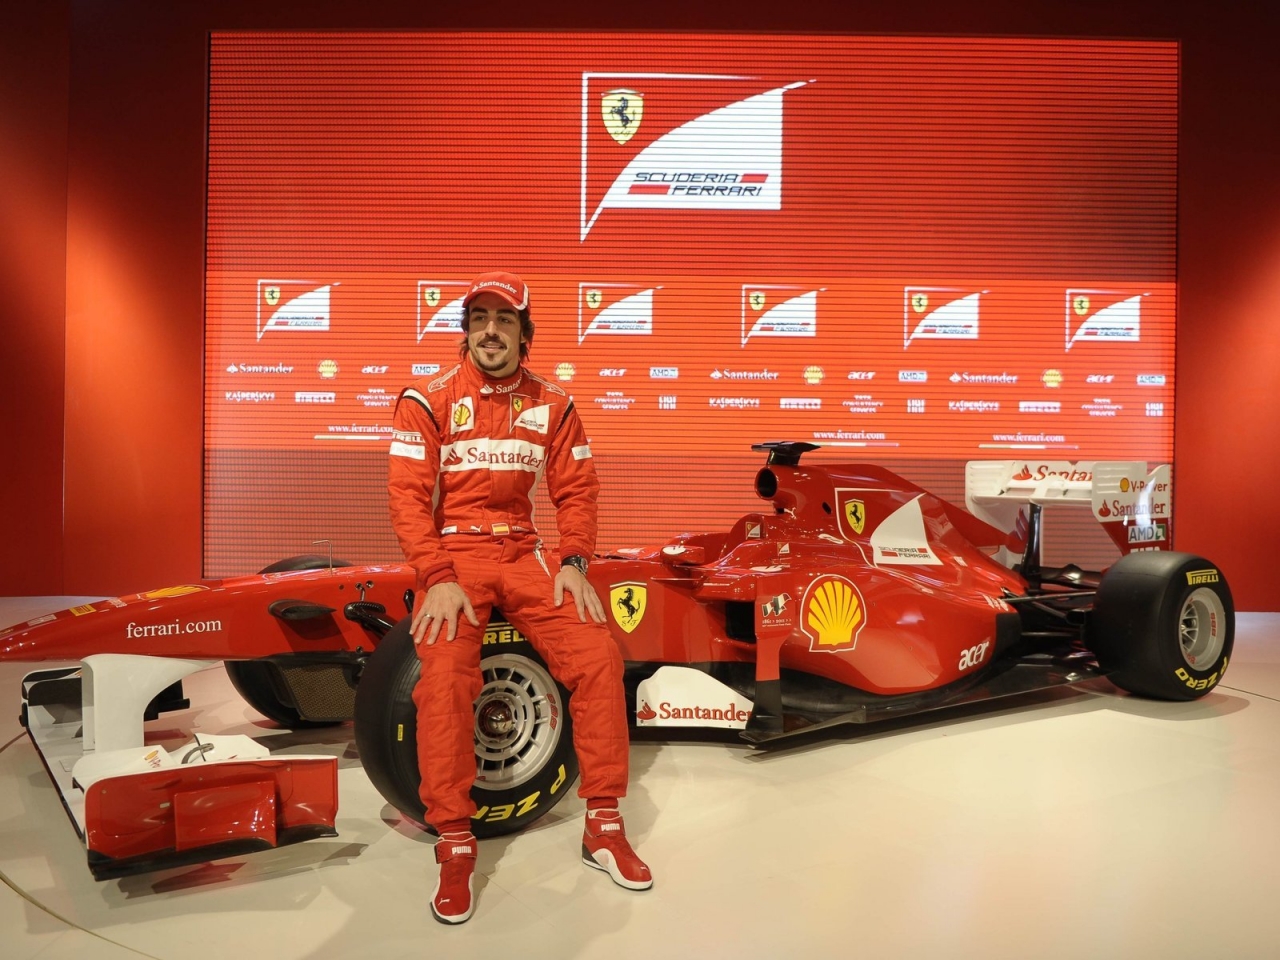 Fernando Alonso Ferrari for 1280 x 960 resolution